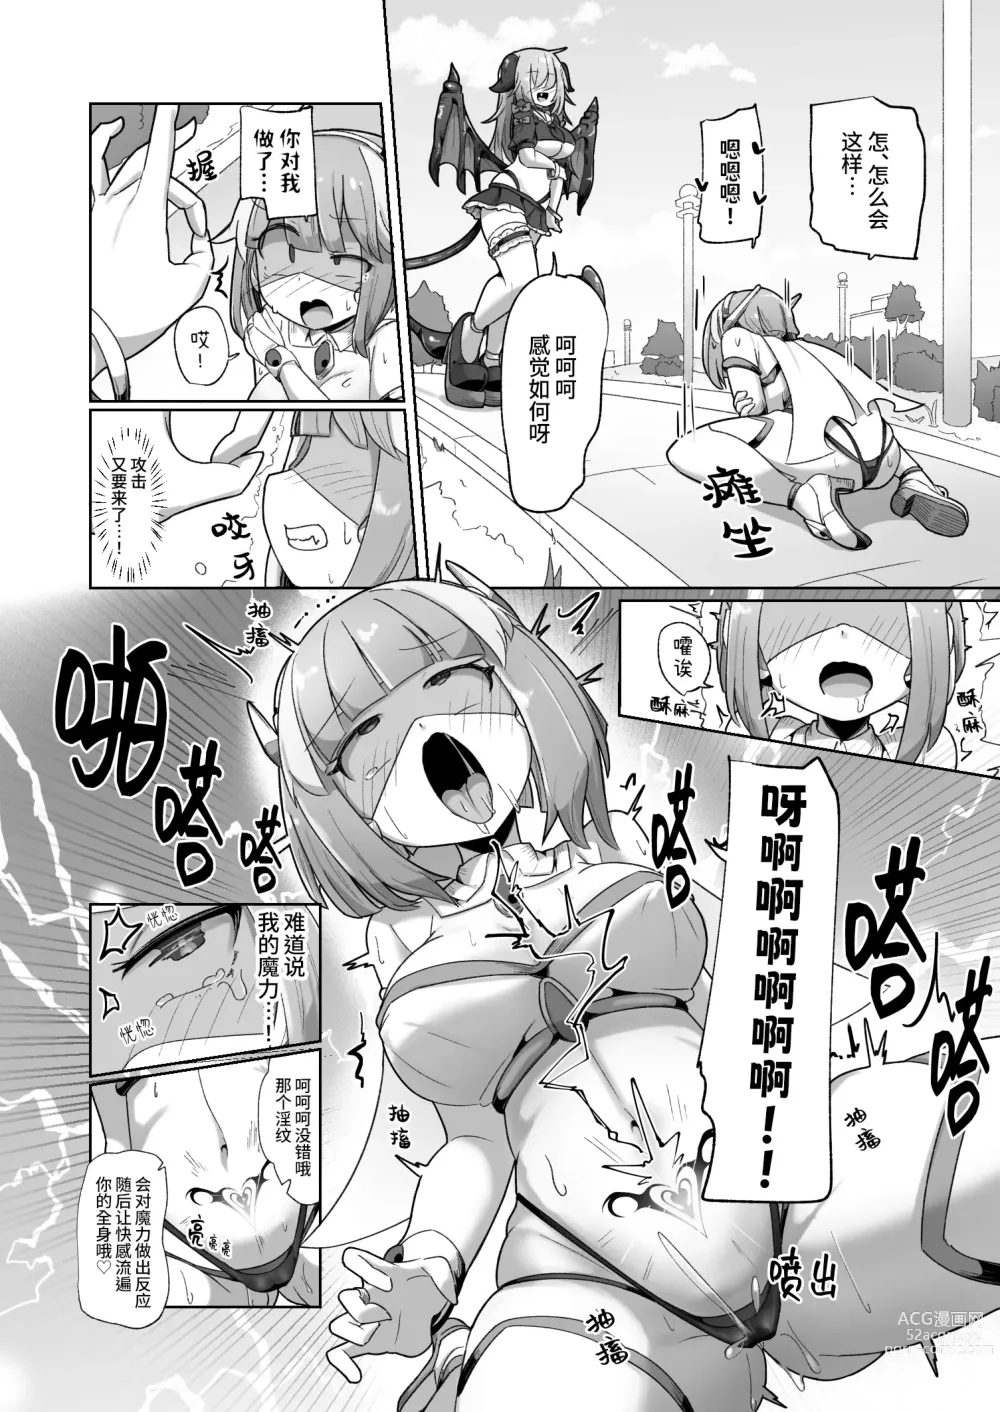 Page 10 of doujinshi 被本该守护的同伴侵犯的这种感觉怎么样啊(笑)??